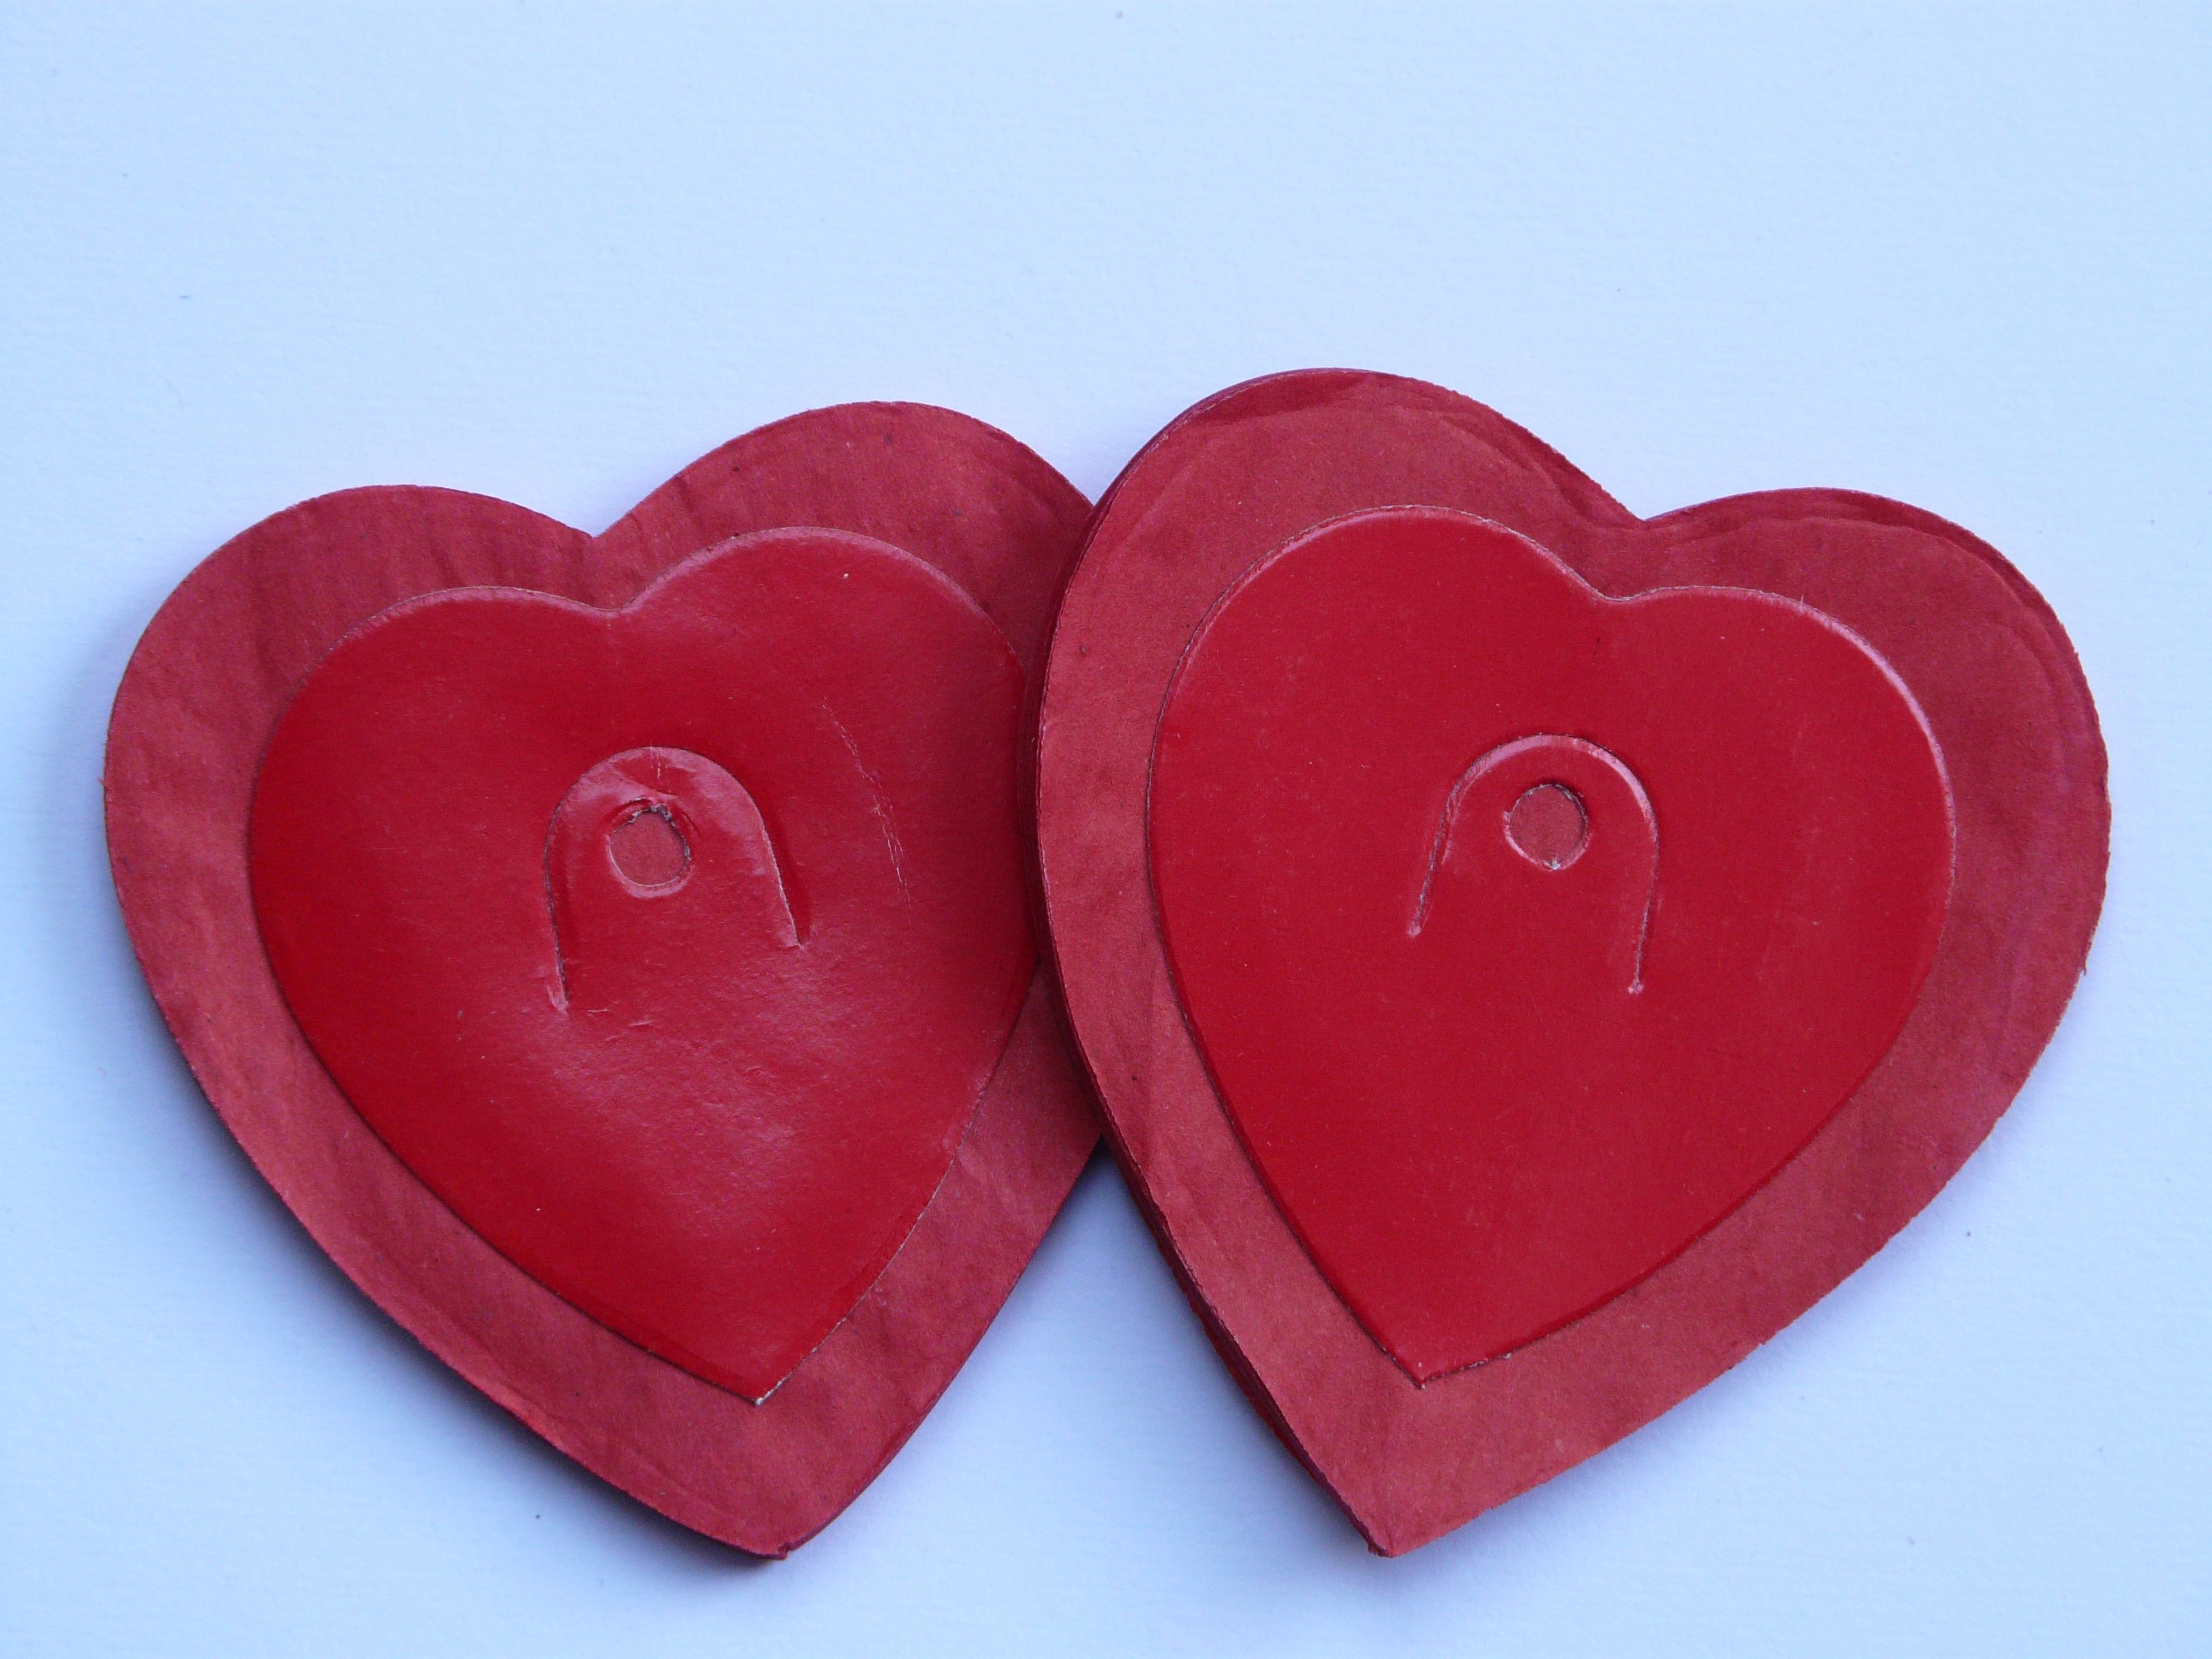 2 red wooden heart shape board